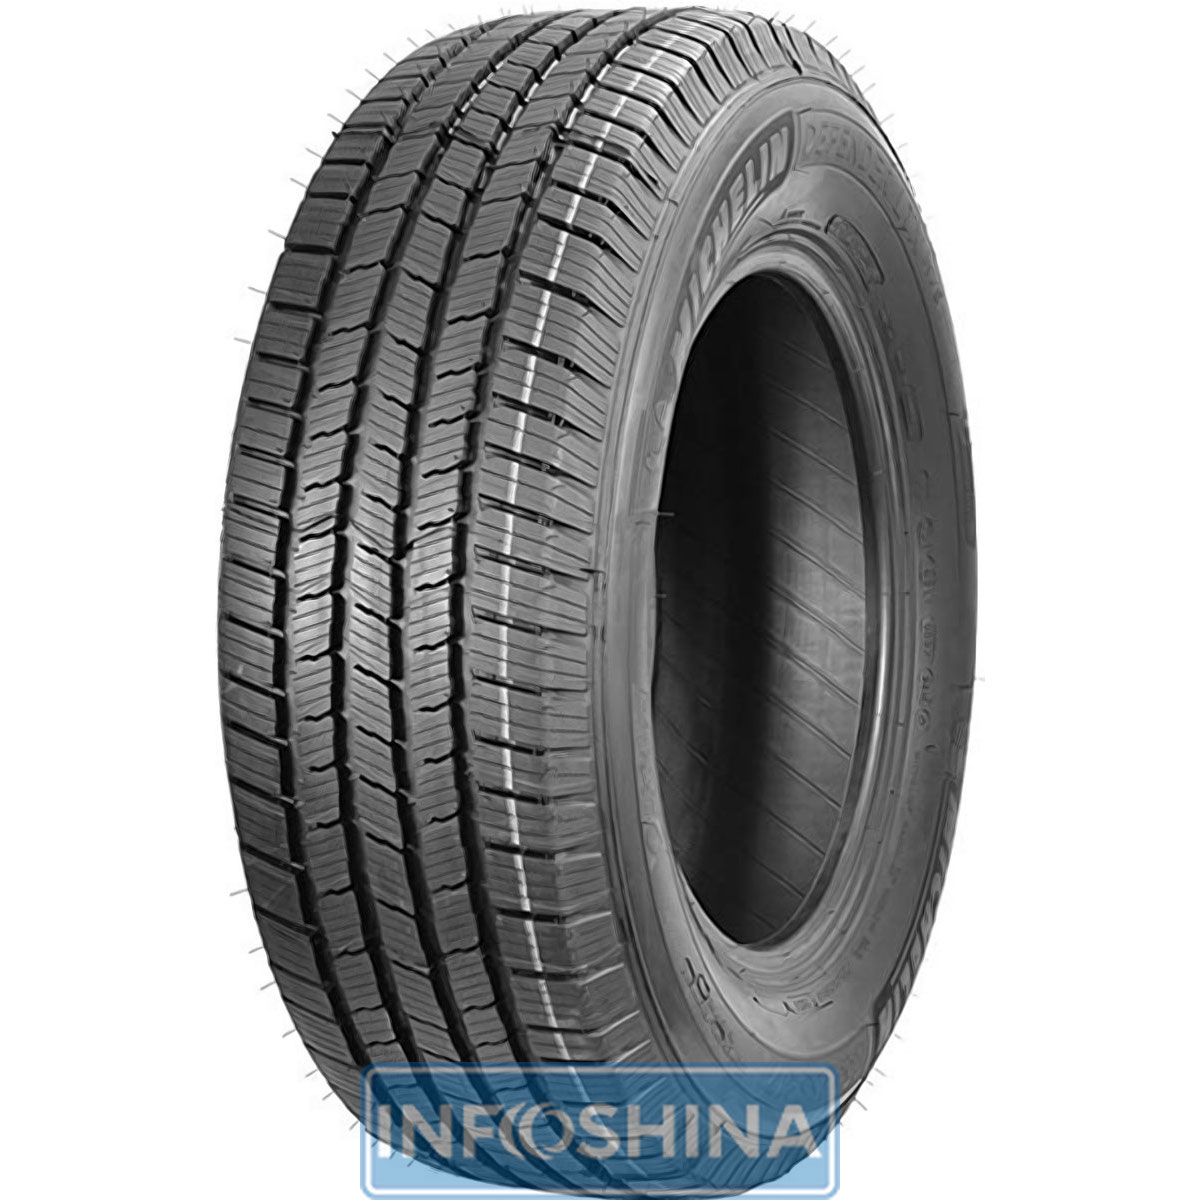 Купить шины Michelin Defender LTX M/S 275/65 R18 123/120R